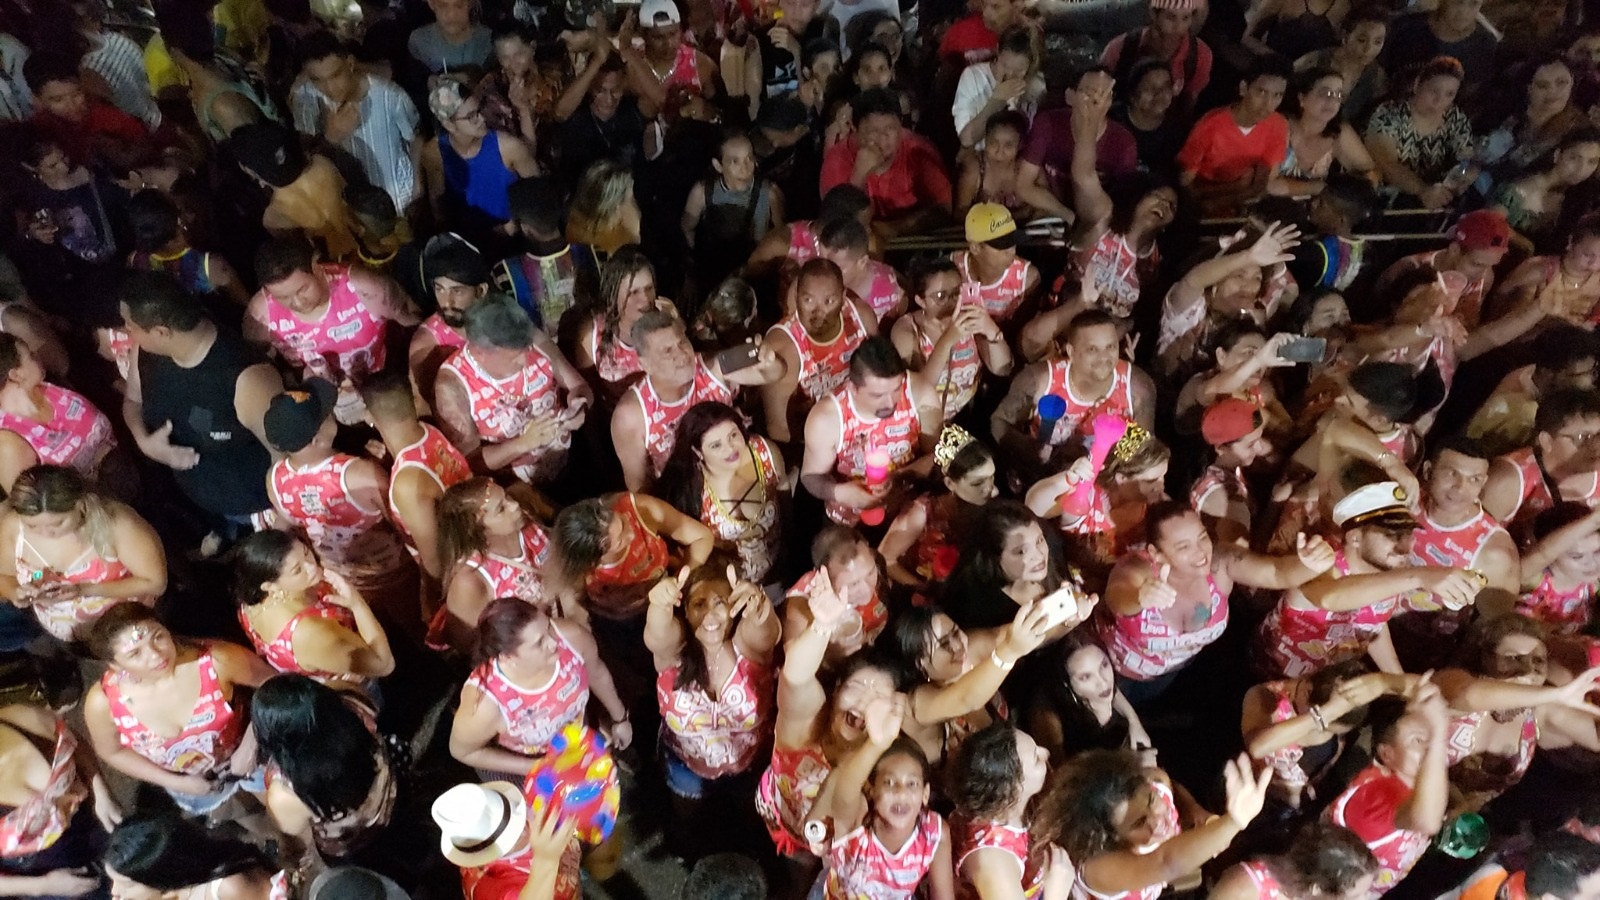 NESTE DOMINGO: Bloco Leva Eu promove feijoada na festa de lançamento do Carnaval neste deste ano